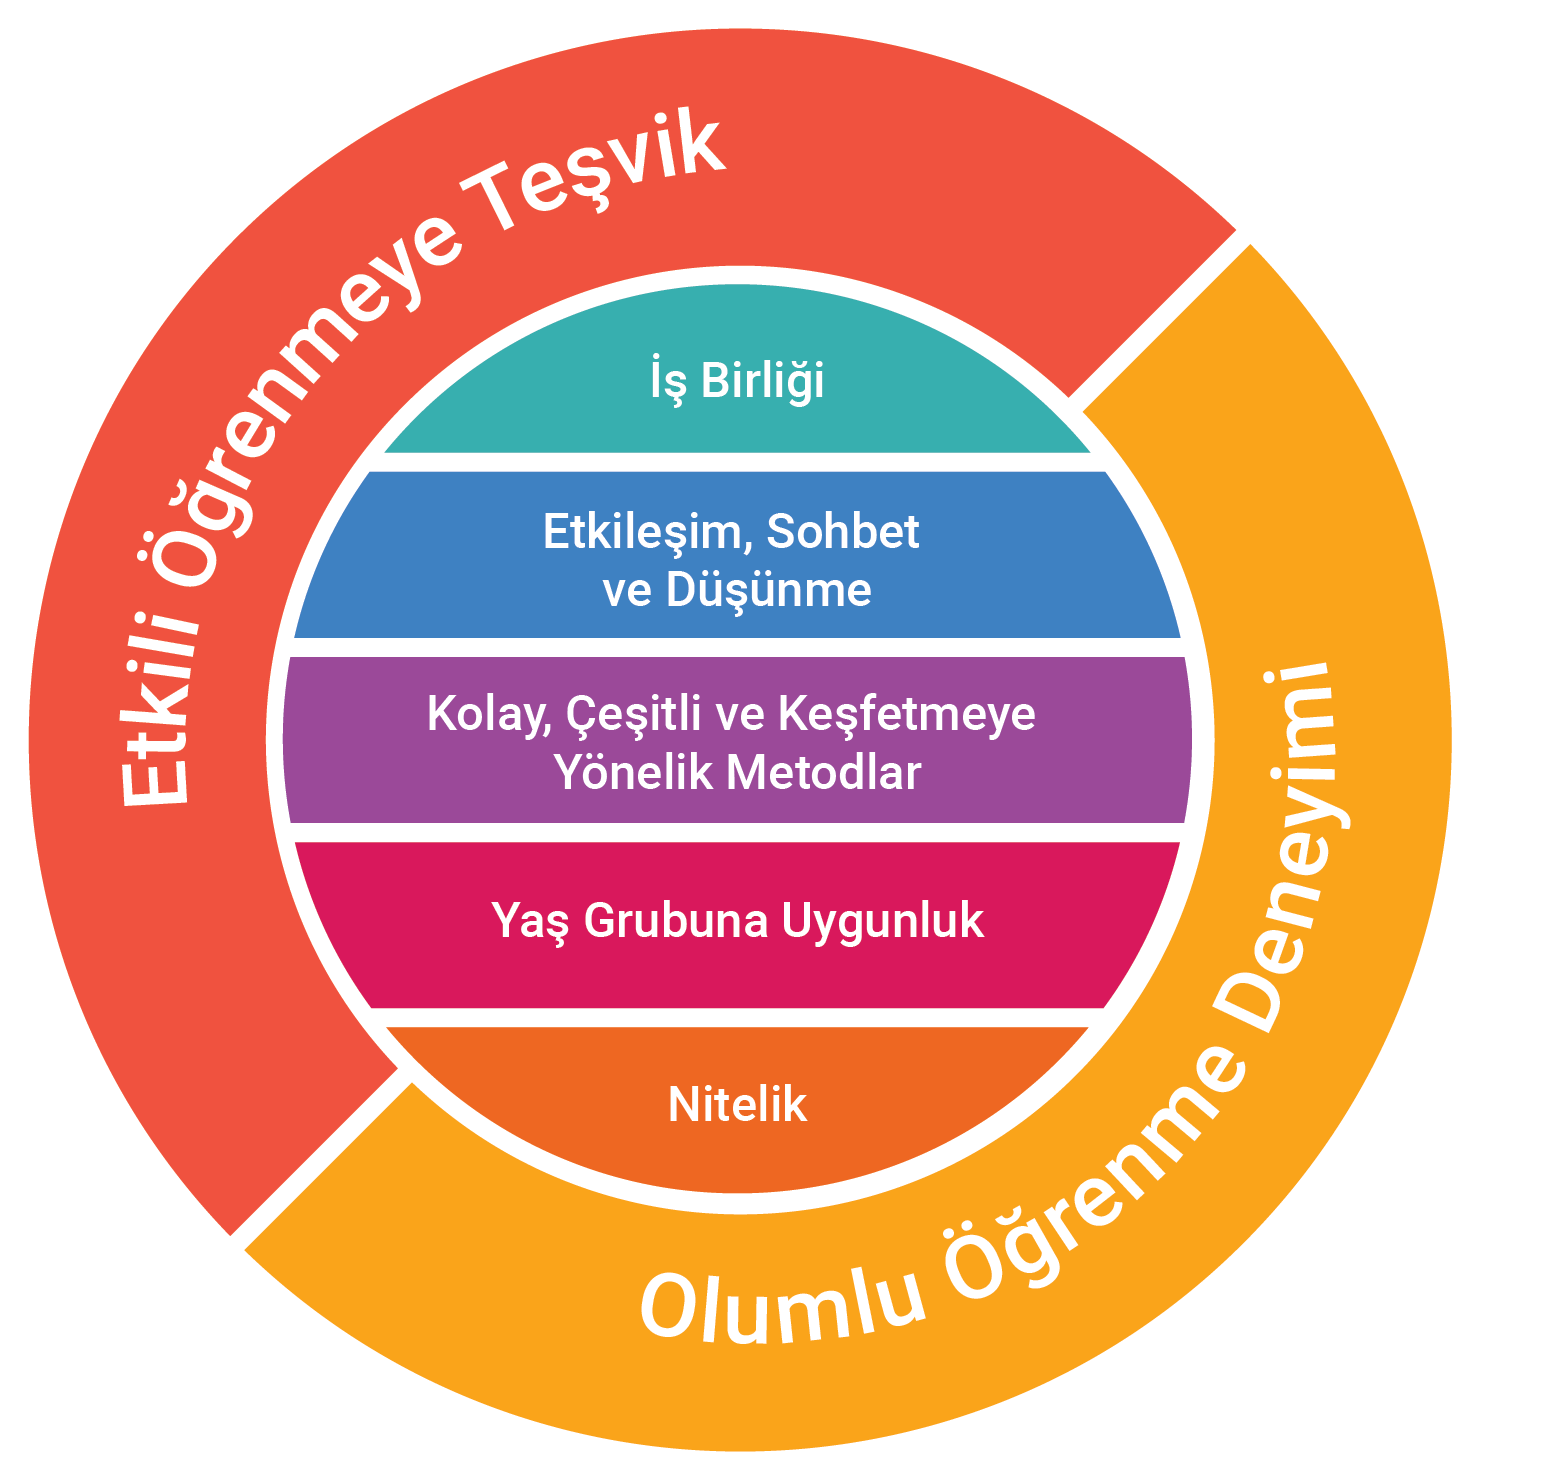 Principels in teaching_TURKEY.png